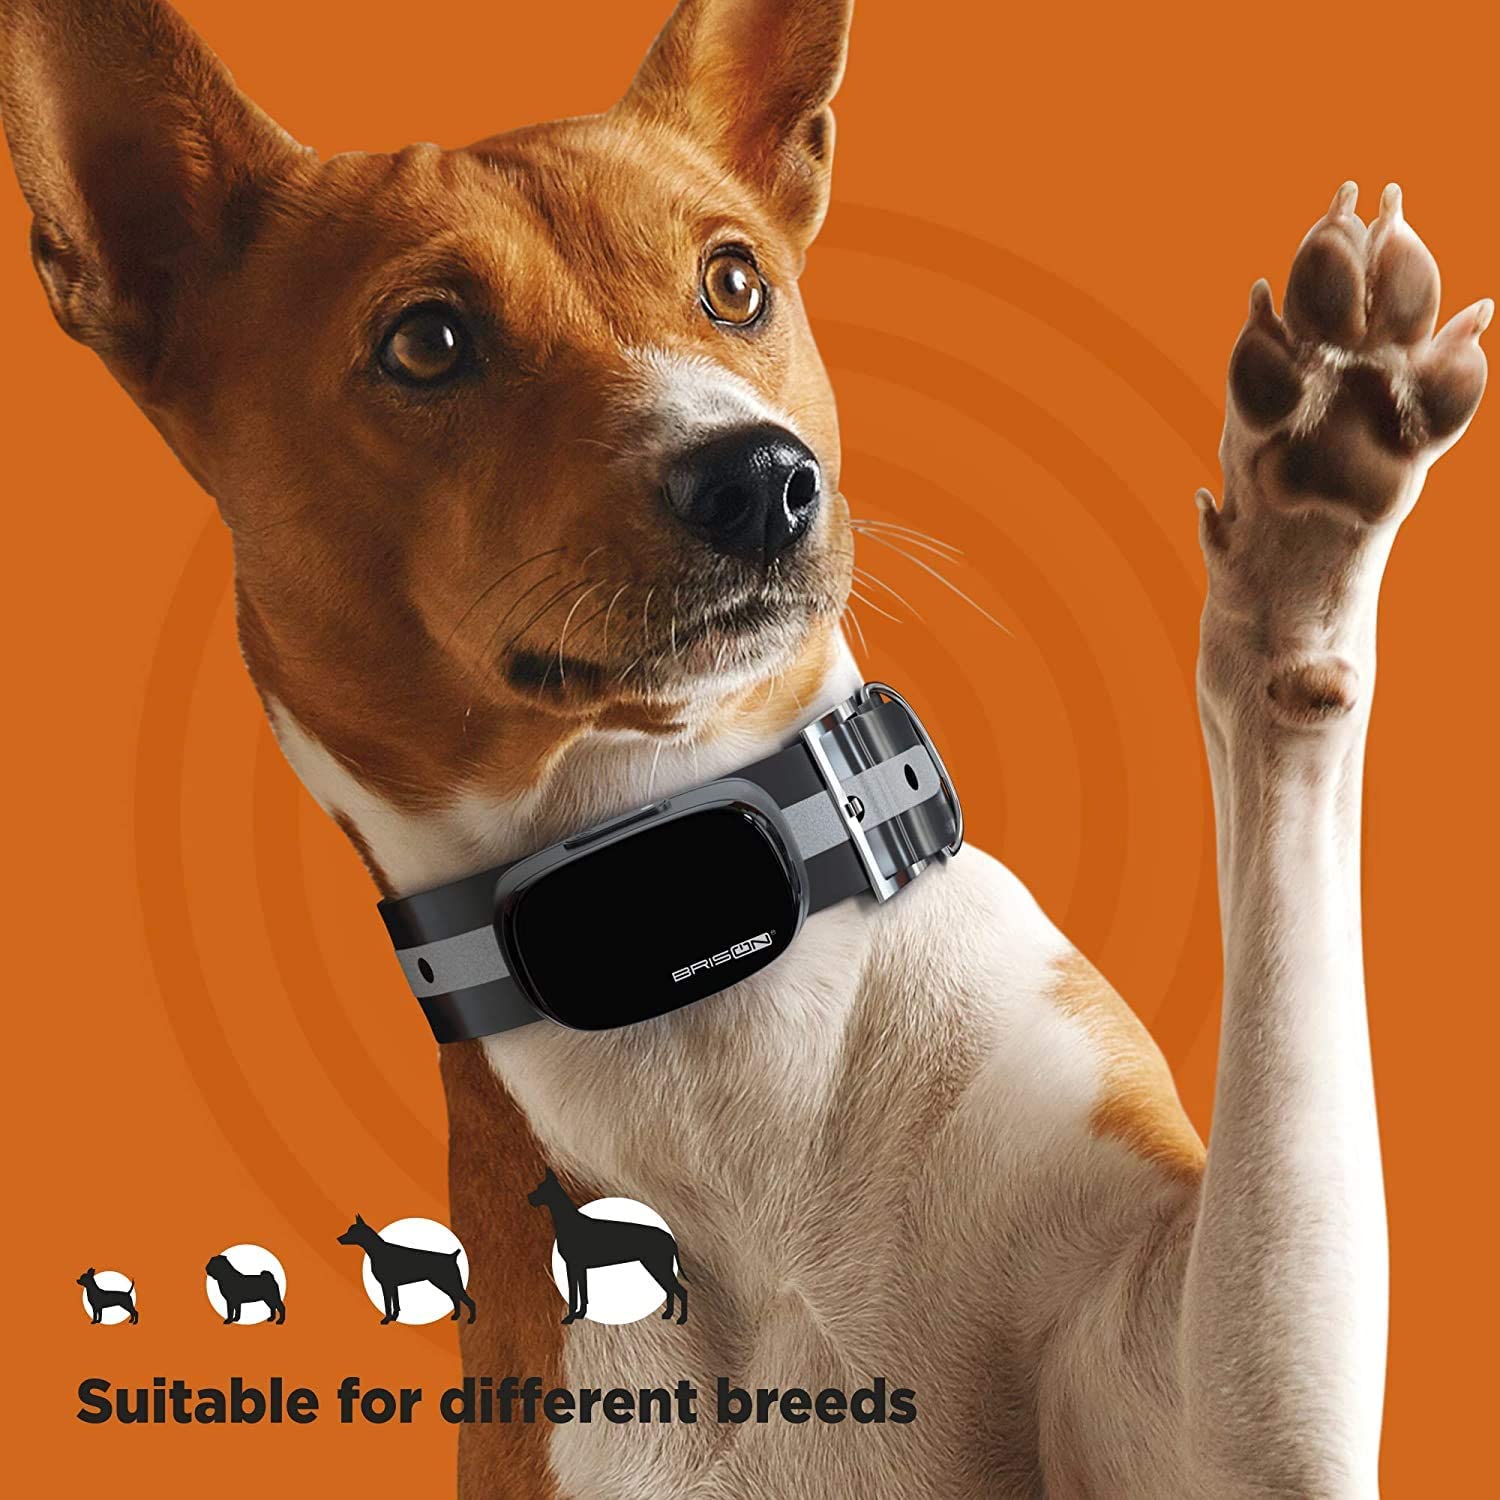  قلاده آموزش سگ دارای دو کانال است که می توانید همزمان دو سگ را کنترل کنید